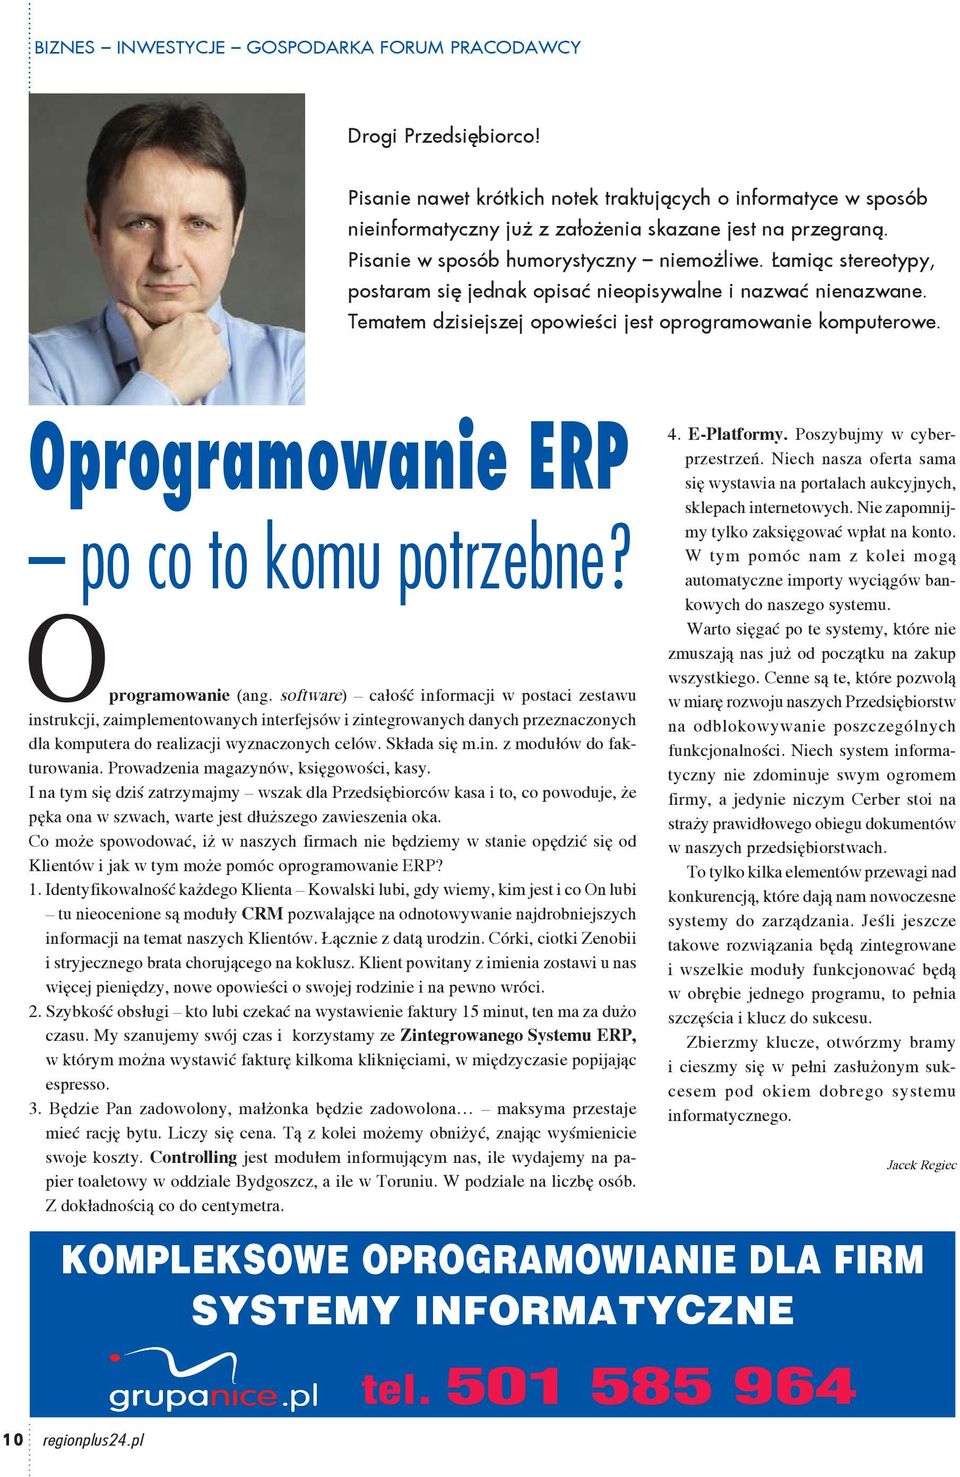 Oprogramowanie ERP po co to komu potrzebne? Oprogramowanie (ang.